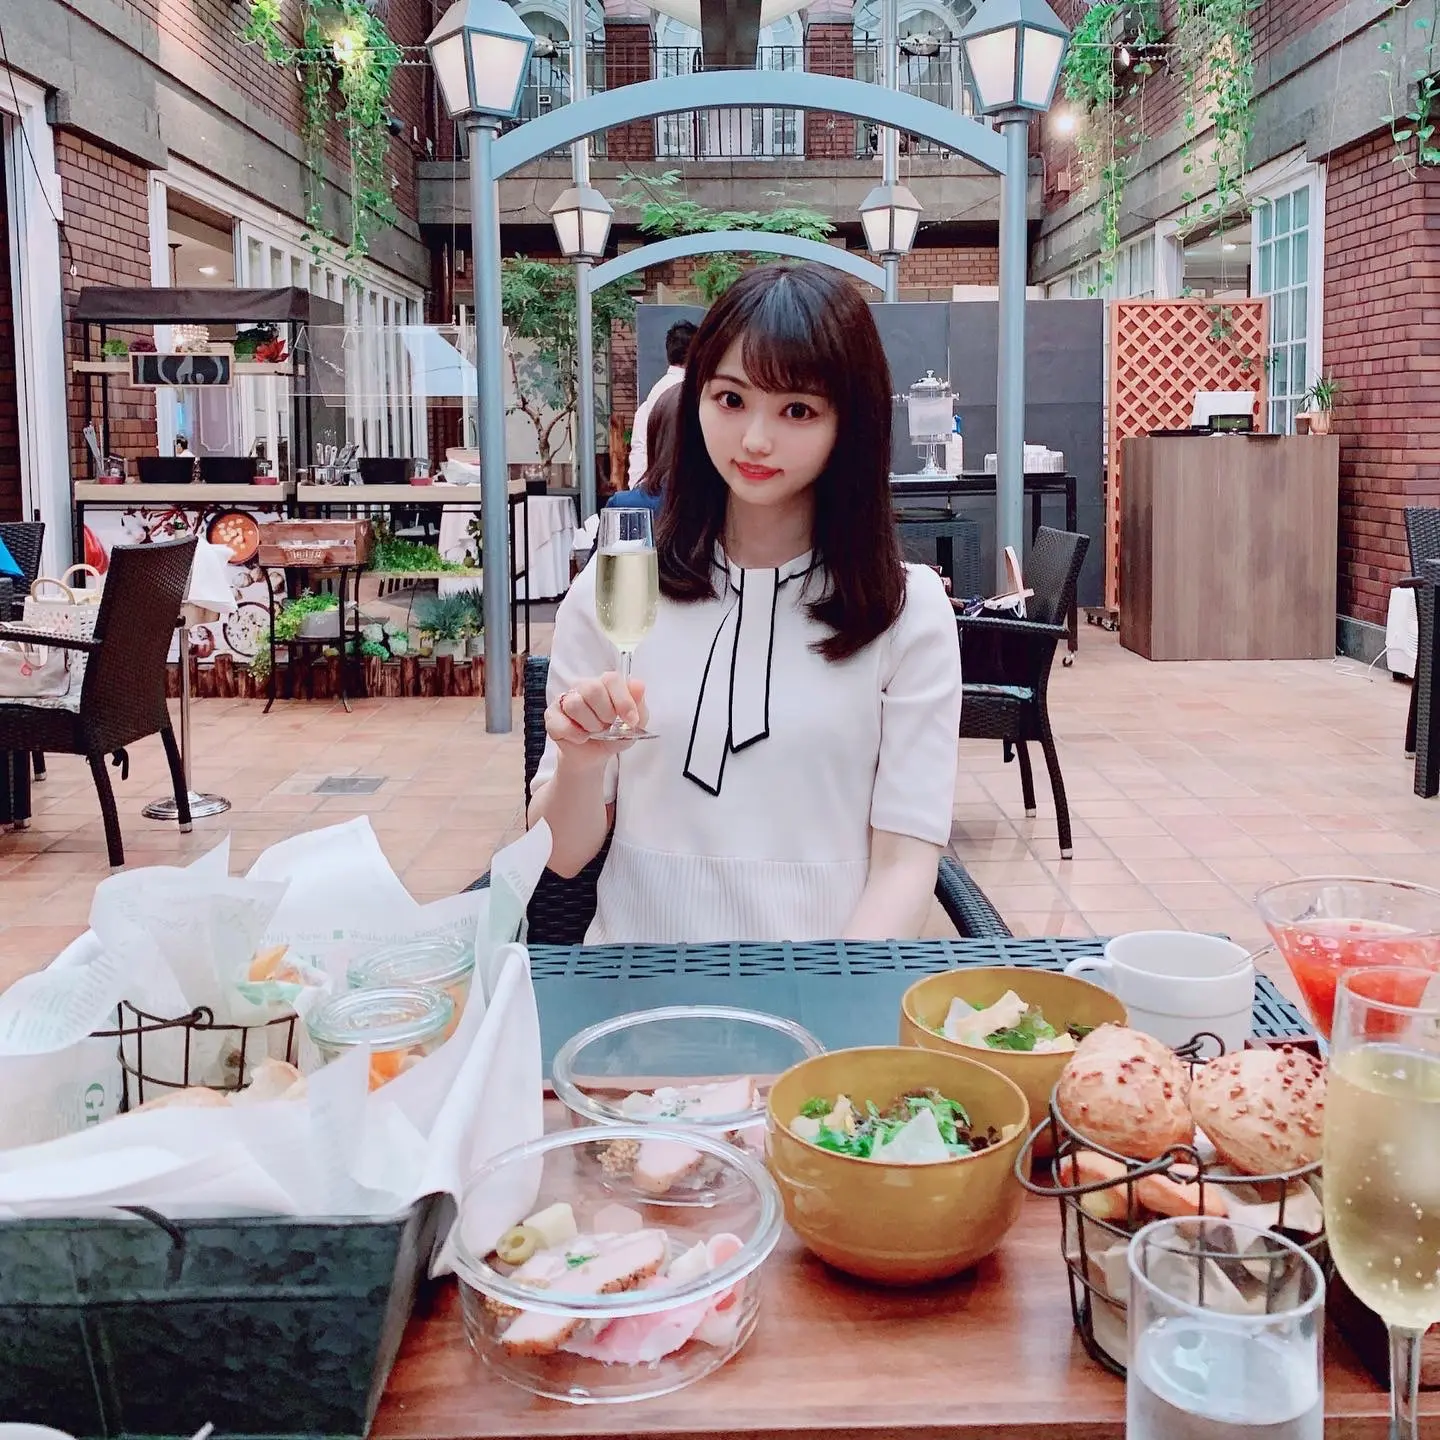 世界一の朝食で有名な 北野ホテル レストラン イグレック ランチ 神戸 Moreインフルエンサーズブログ Daily More